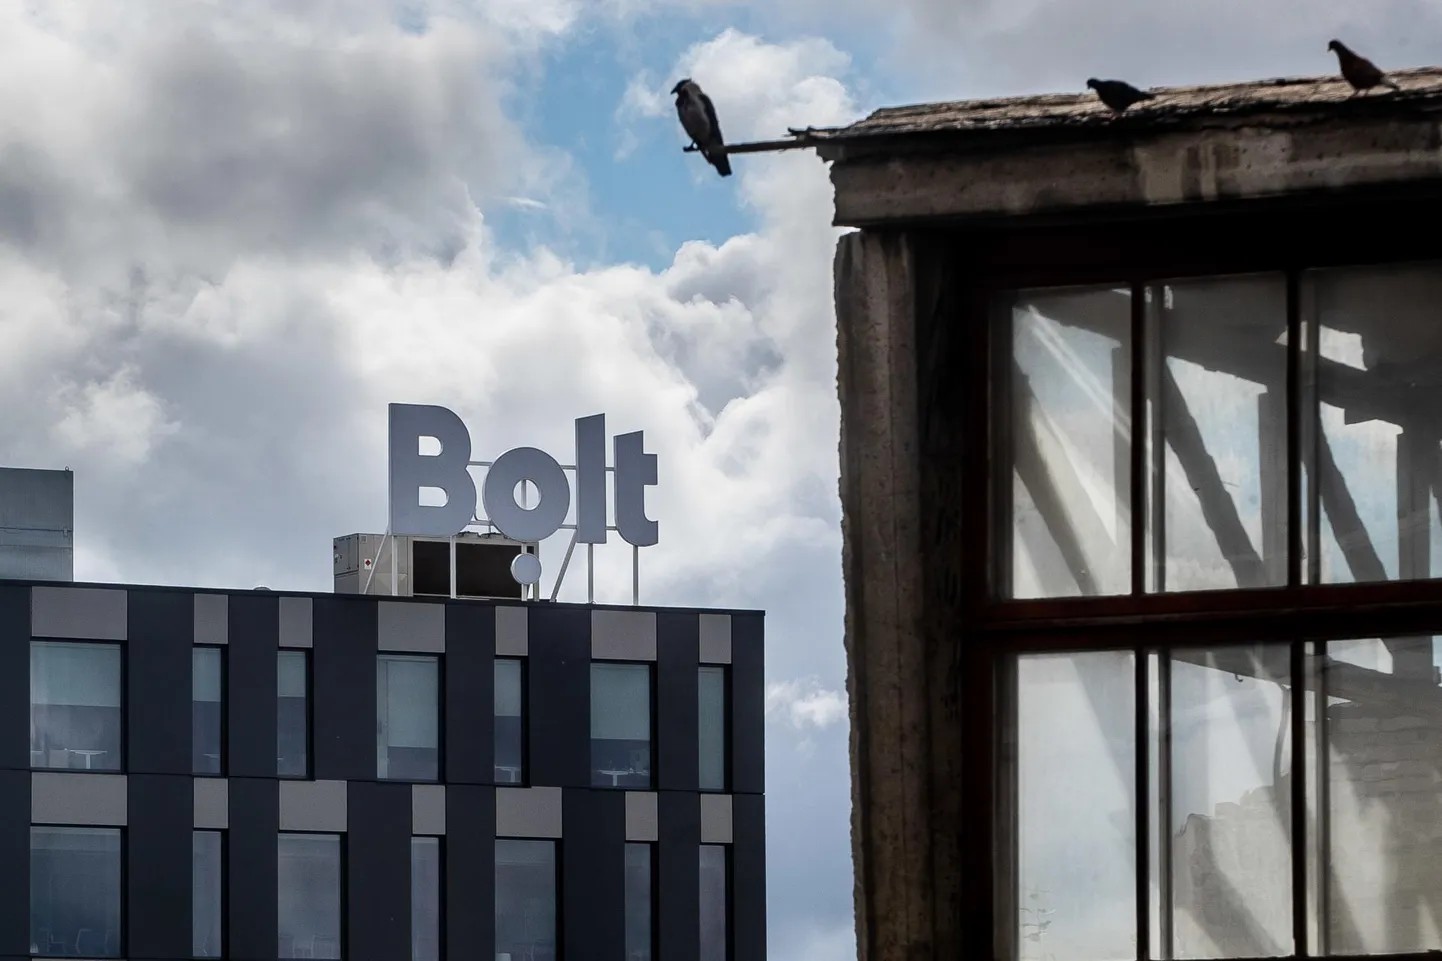 Bolt on üks suurimaid Eesti idusektori üks tööandjaid.